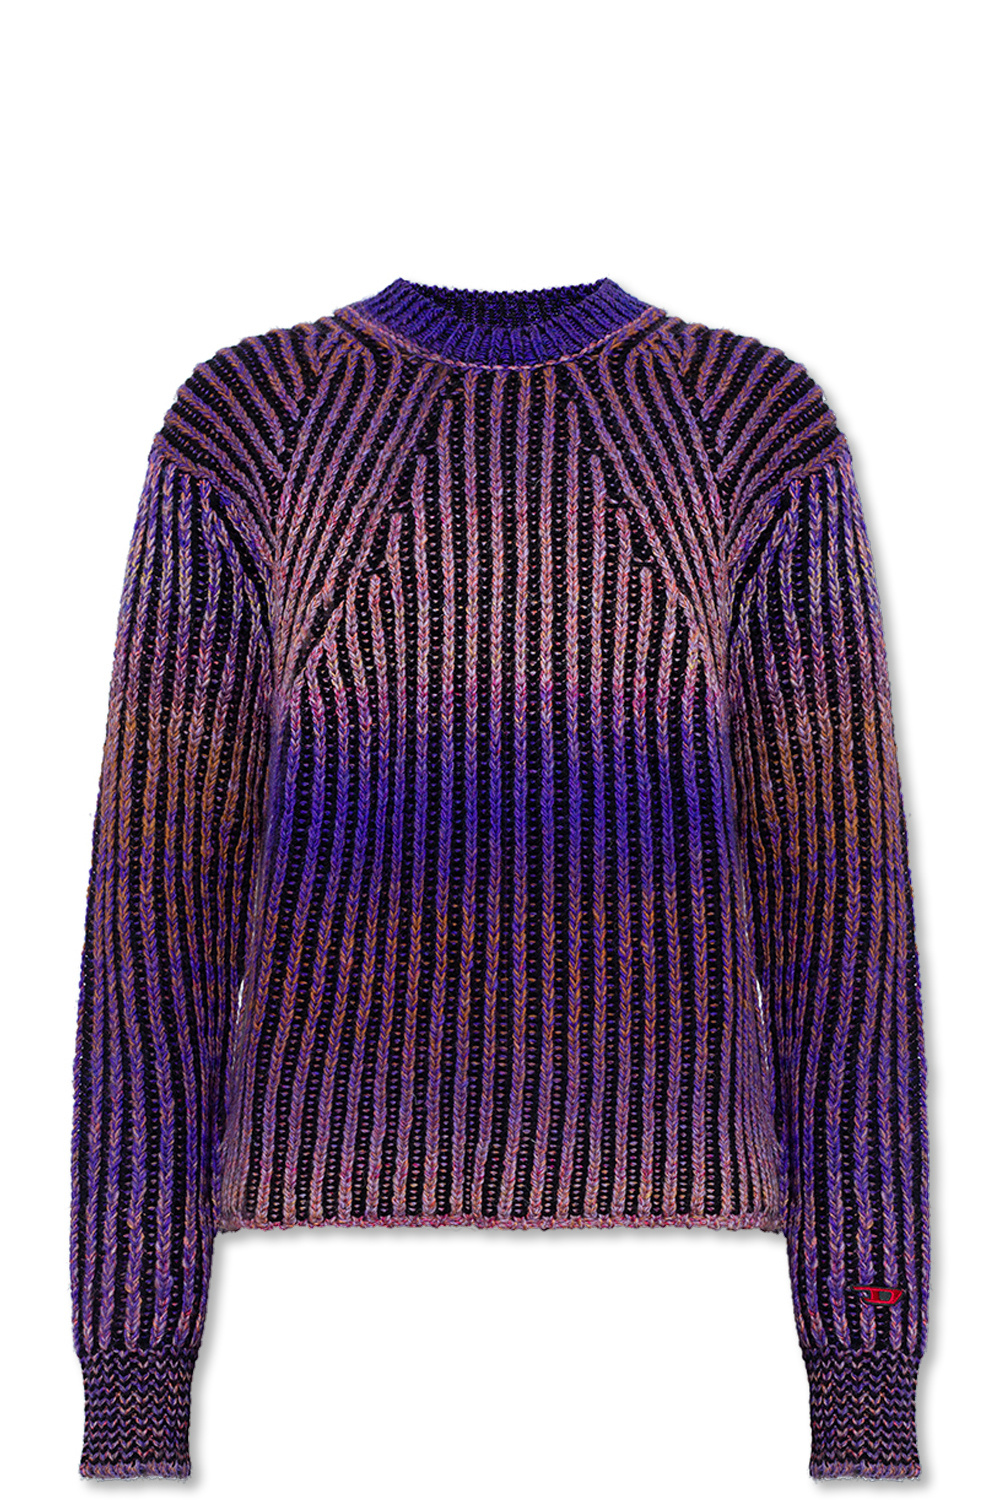 Diesel ‘K-Oakland’ ASOS sweater